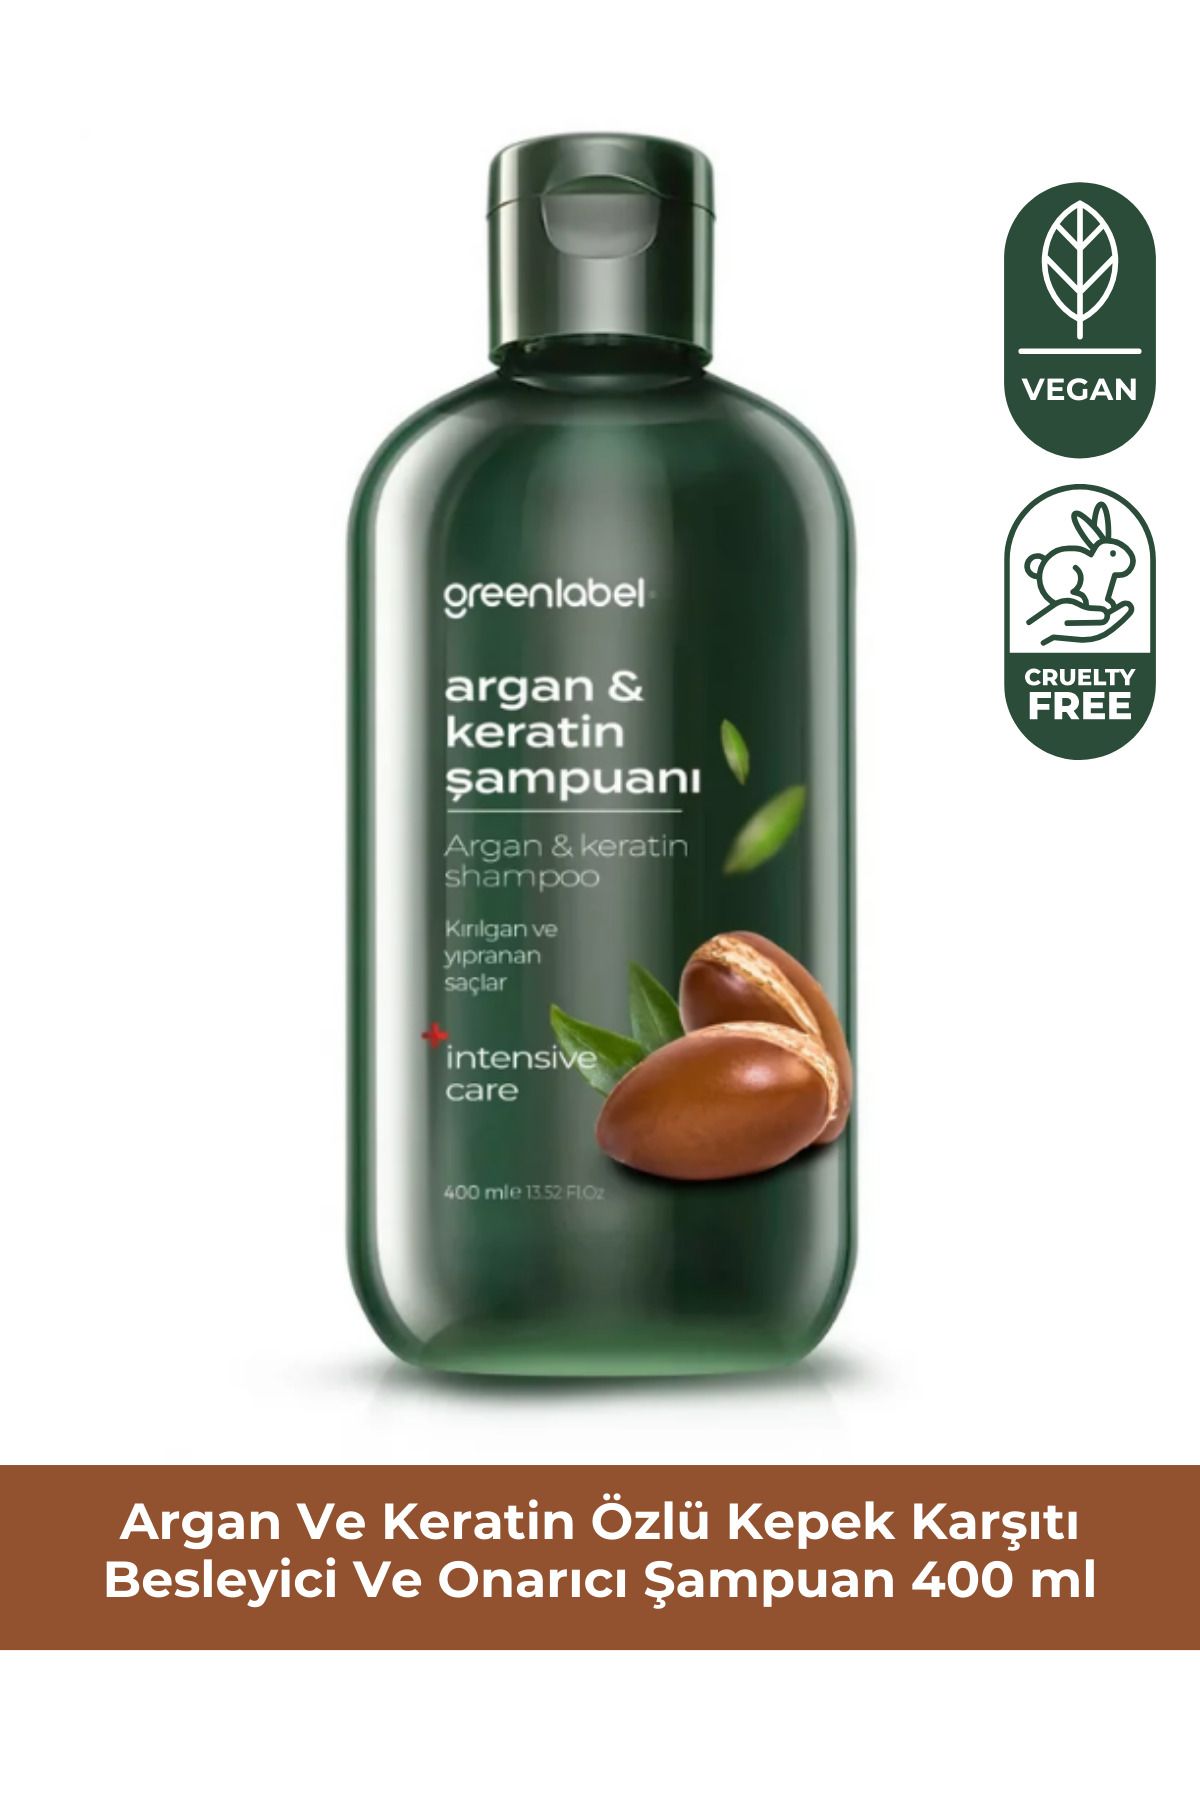 Green Label Greenlabel Argan Ve Keratin Özlü Kepek Karşıtı Besleyici Ve Onarıcı Şampuan 400ml